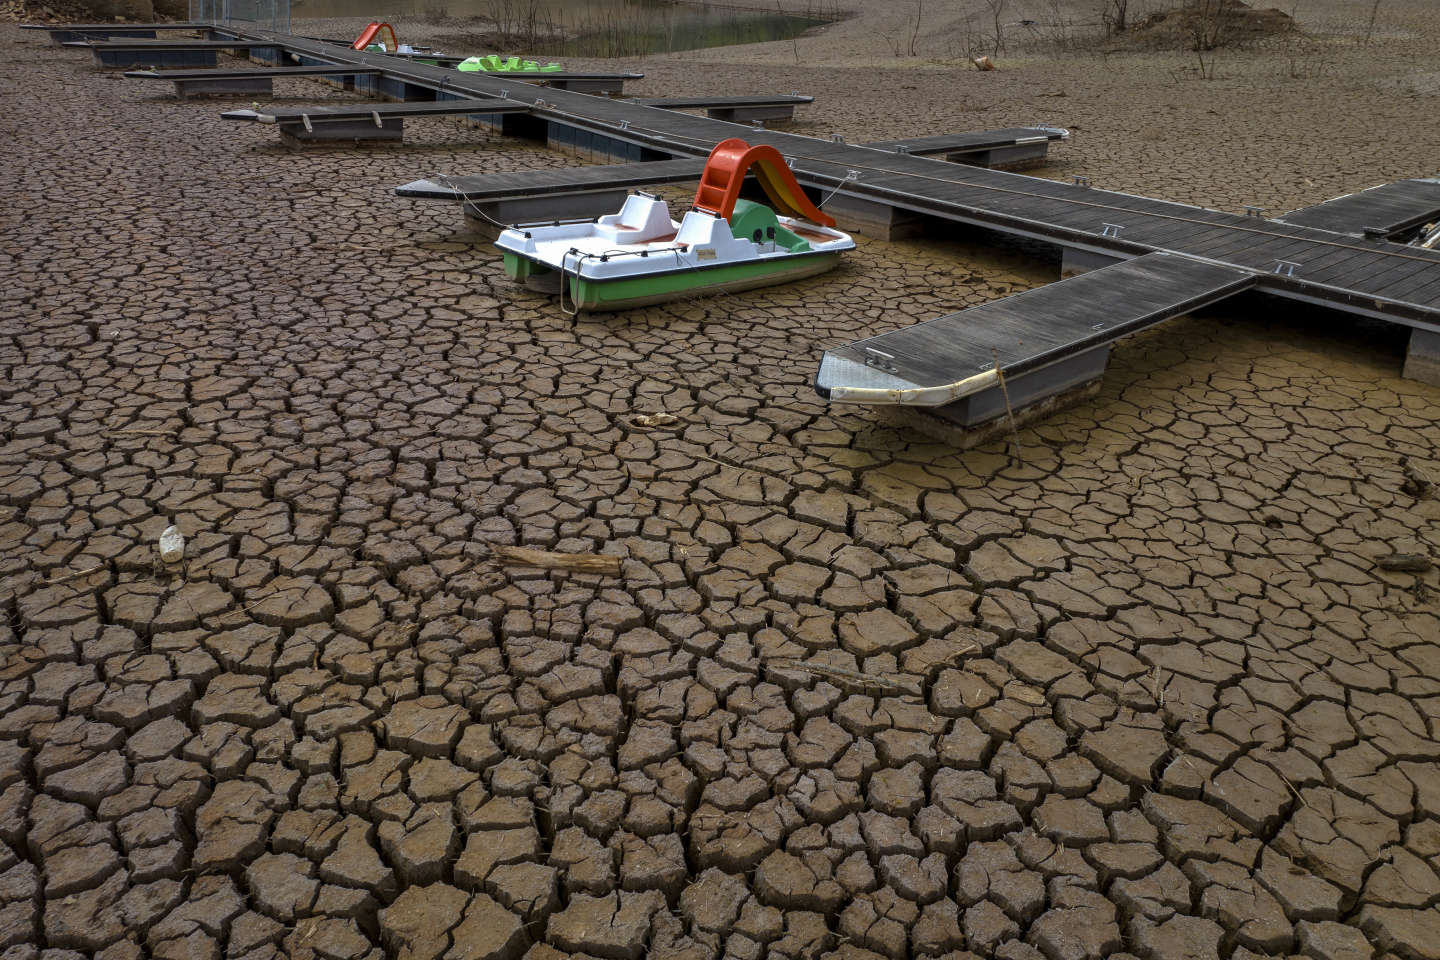 Confrontée à une canicule précoce et une sécheresse majeure, l’Espagne s’interroge sur sa gestion de l’eau